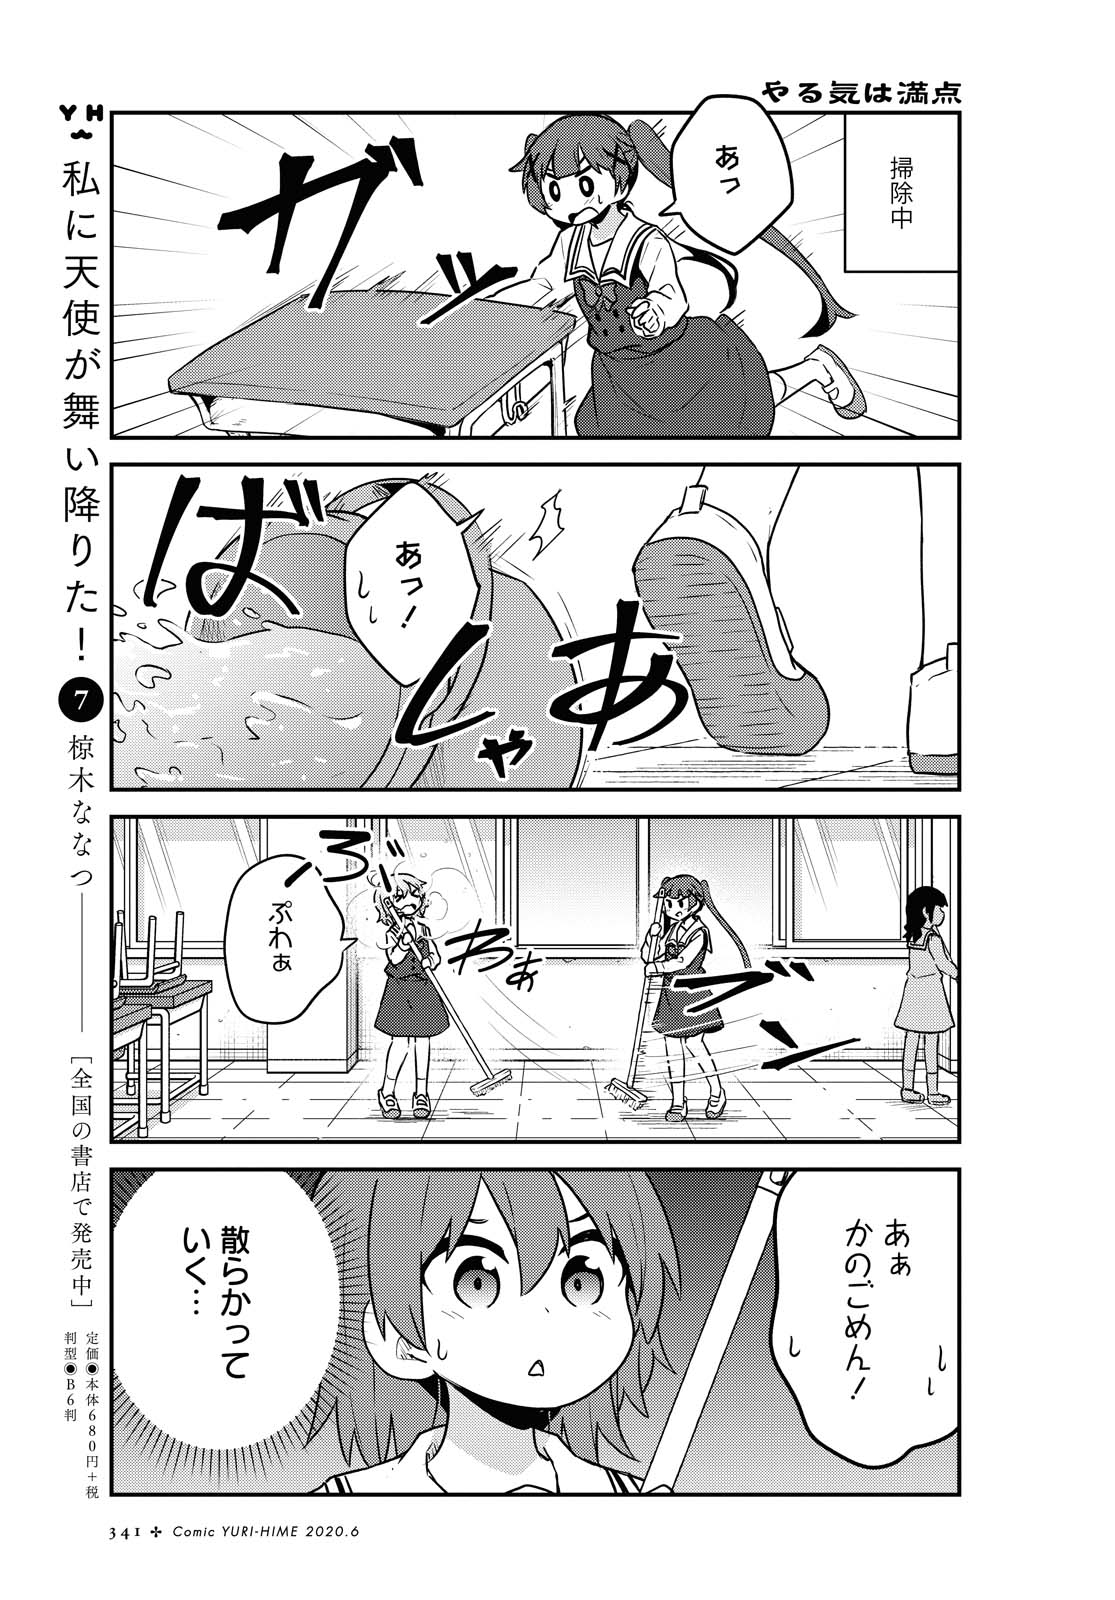 Watashi ni Tenshi ga Maiorita! - Chapter 64 - Page 3